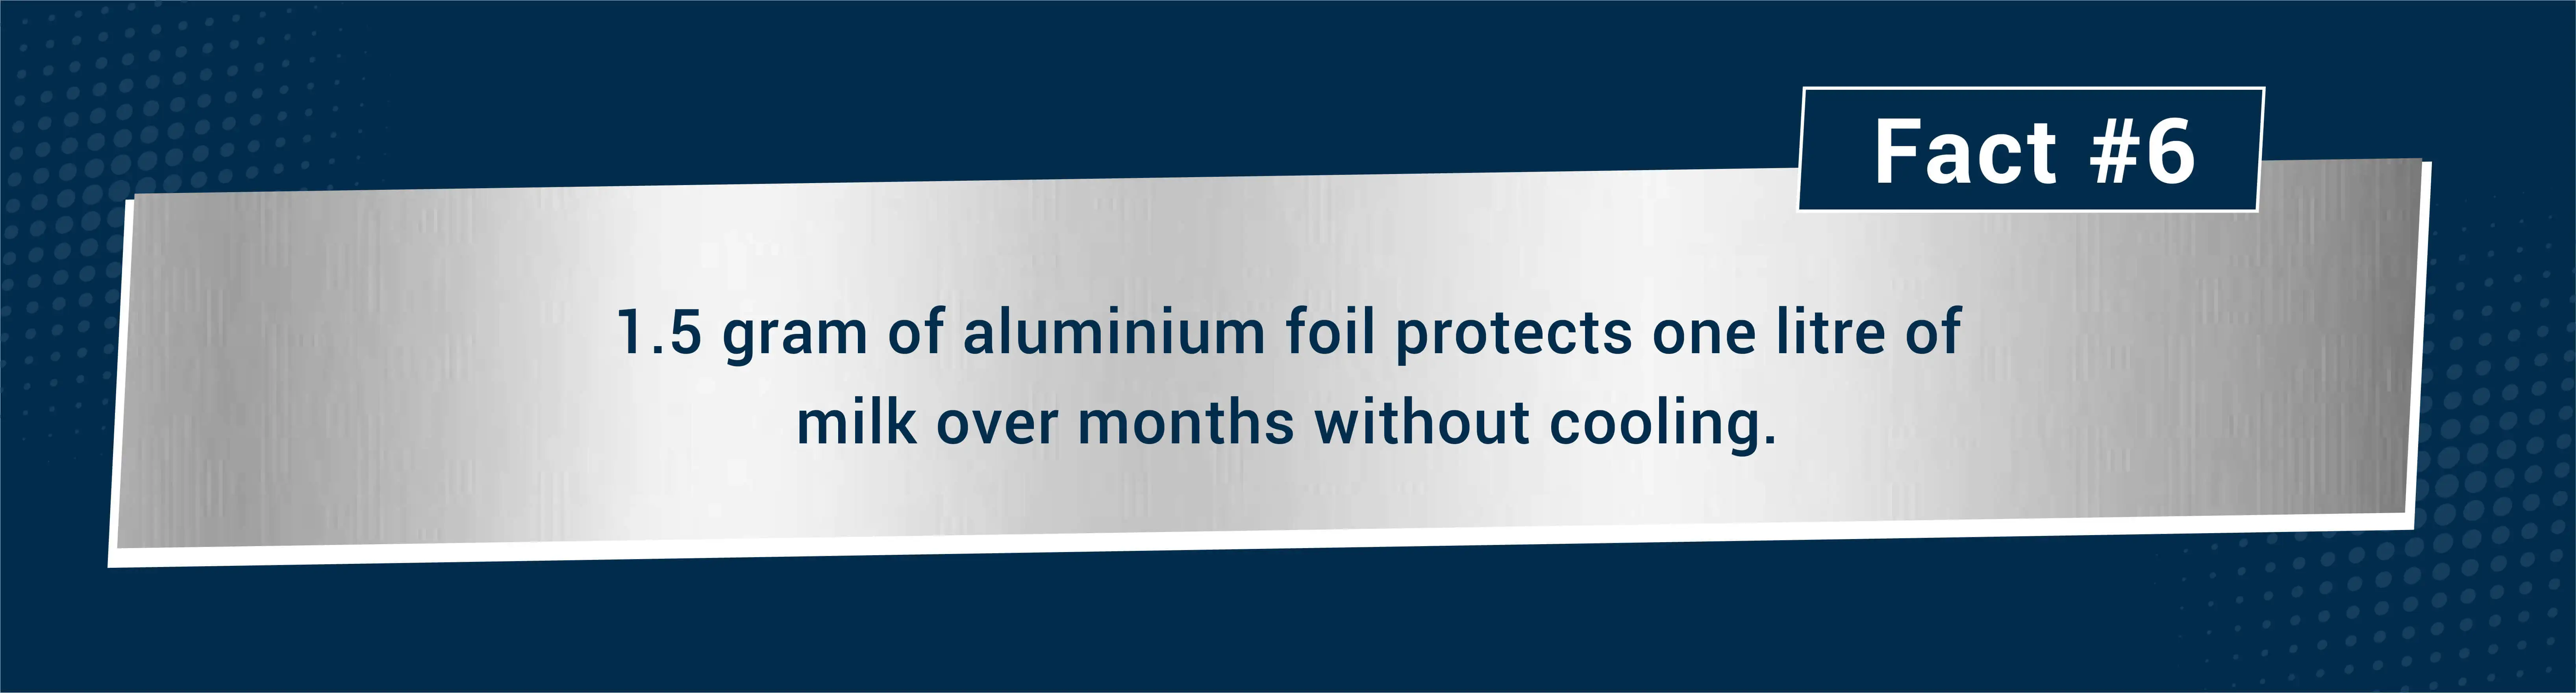 facts about aluminium foil